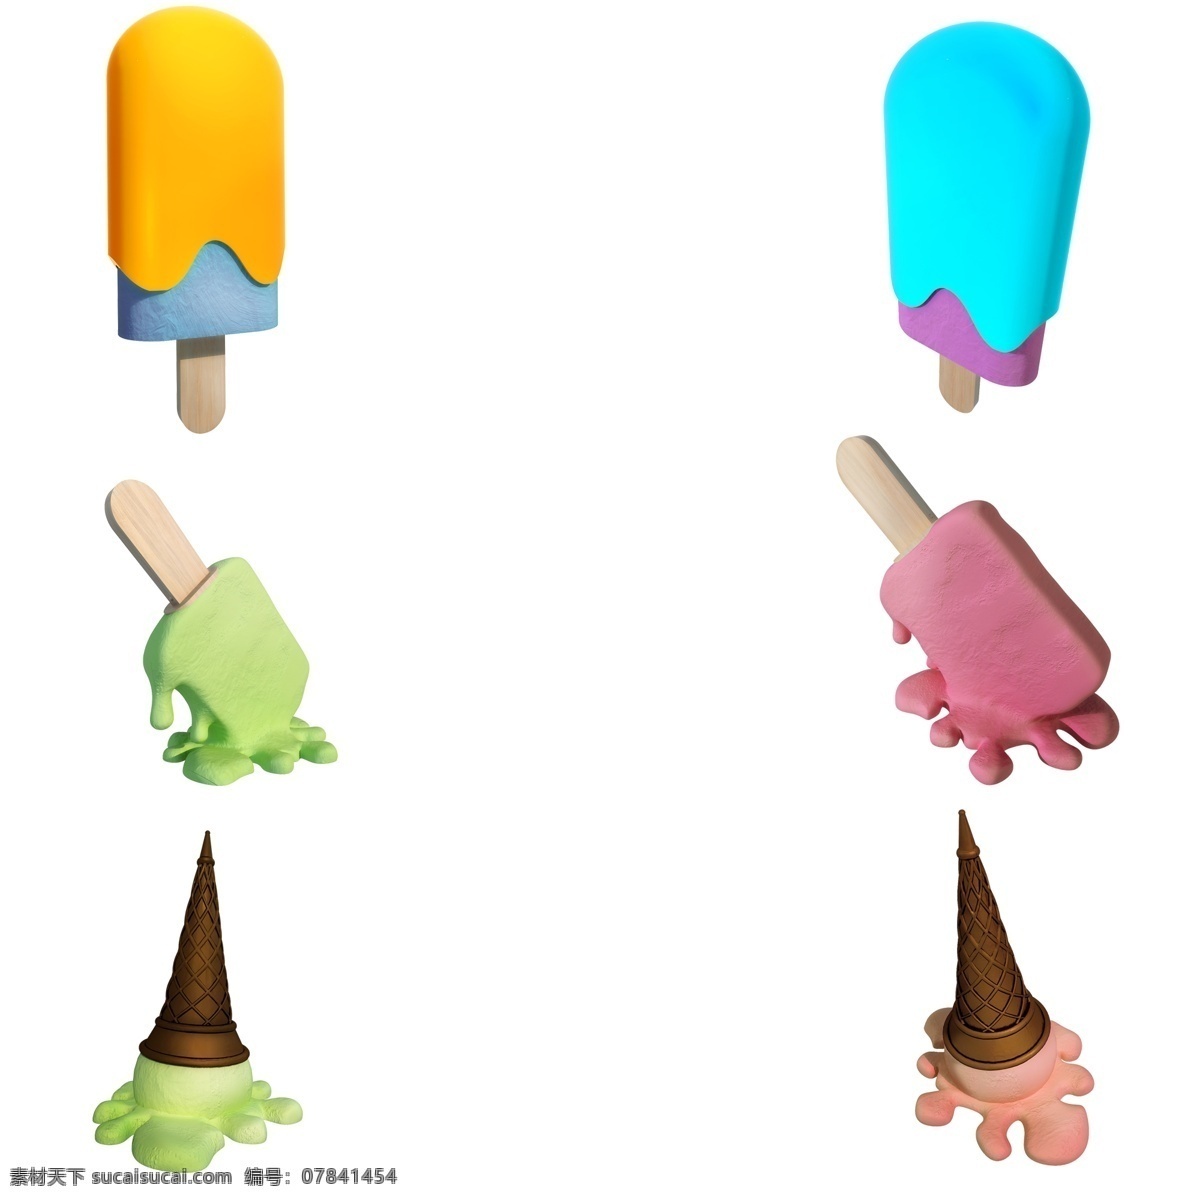 融化 雪糕 套 图 夏天 掉地上 质感 仿真 冰淇淋 套图